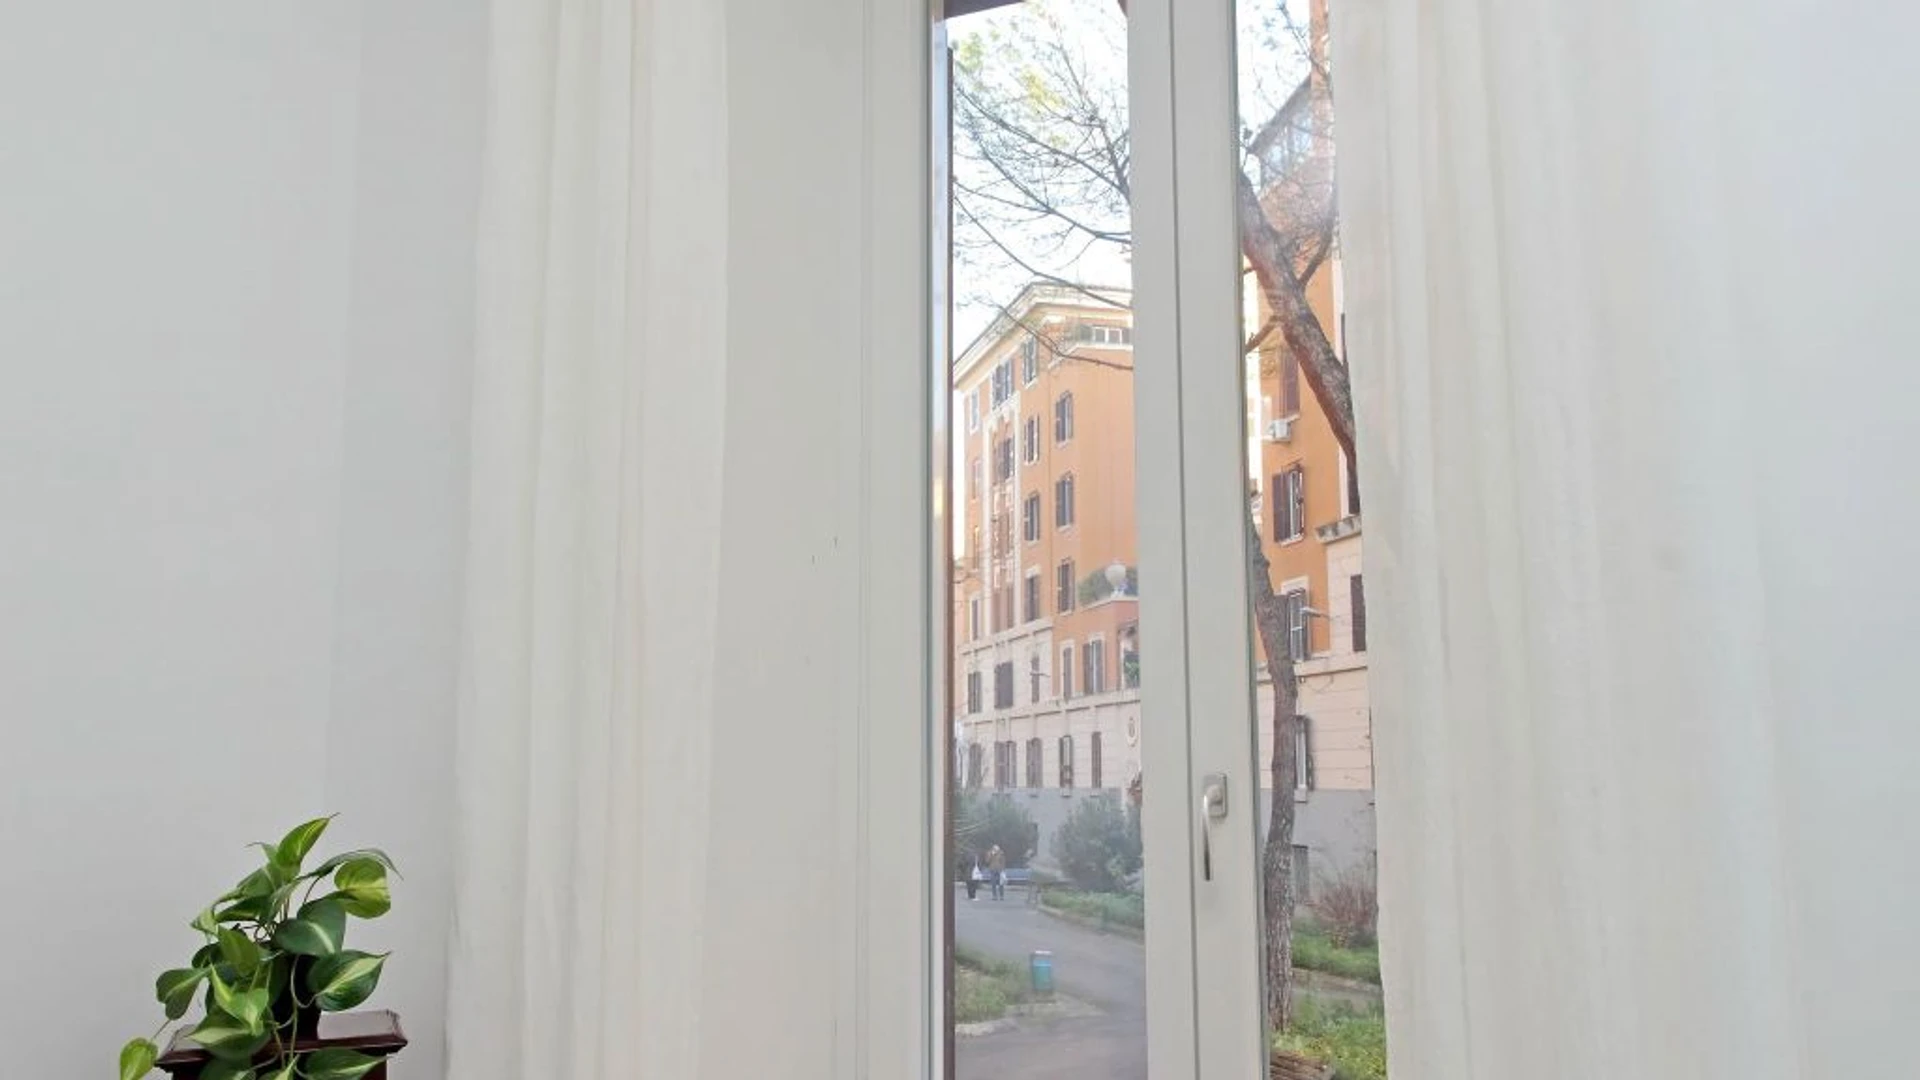 Alojamiento situado en el centro de Roma